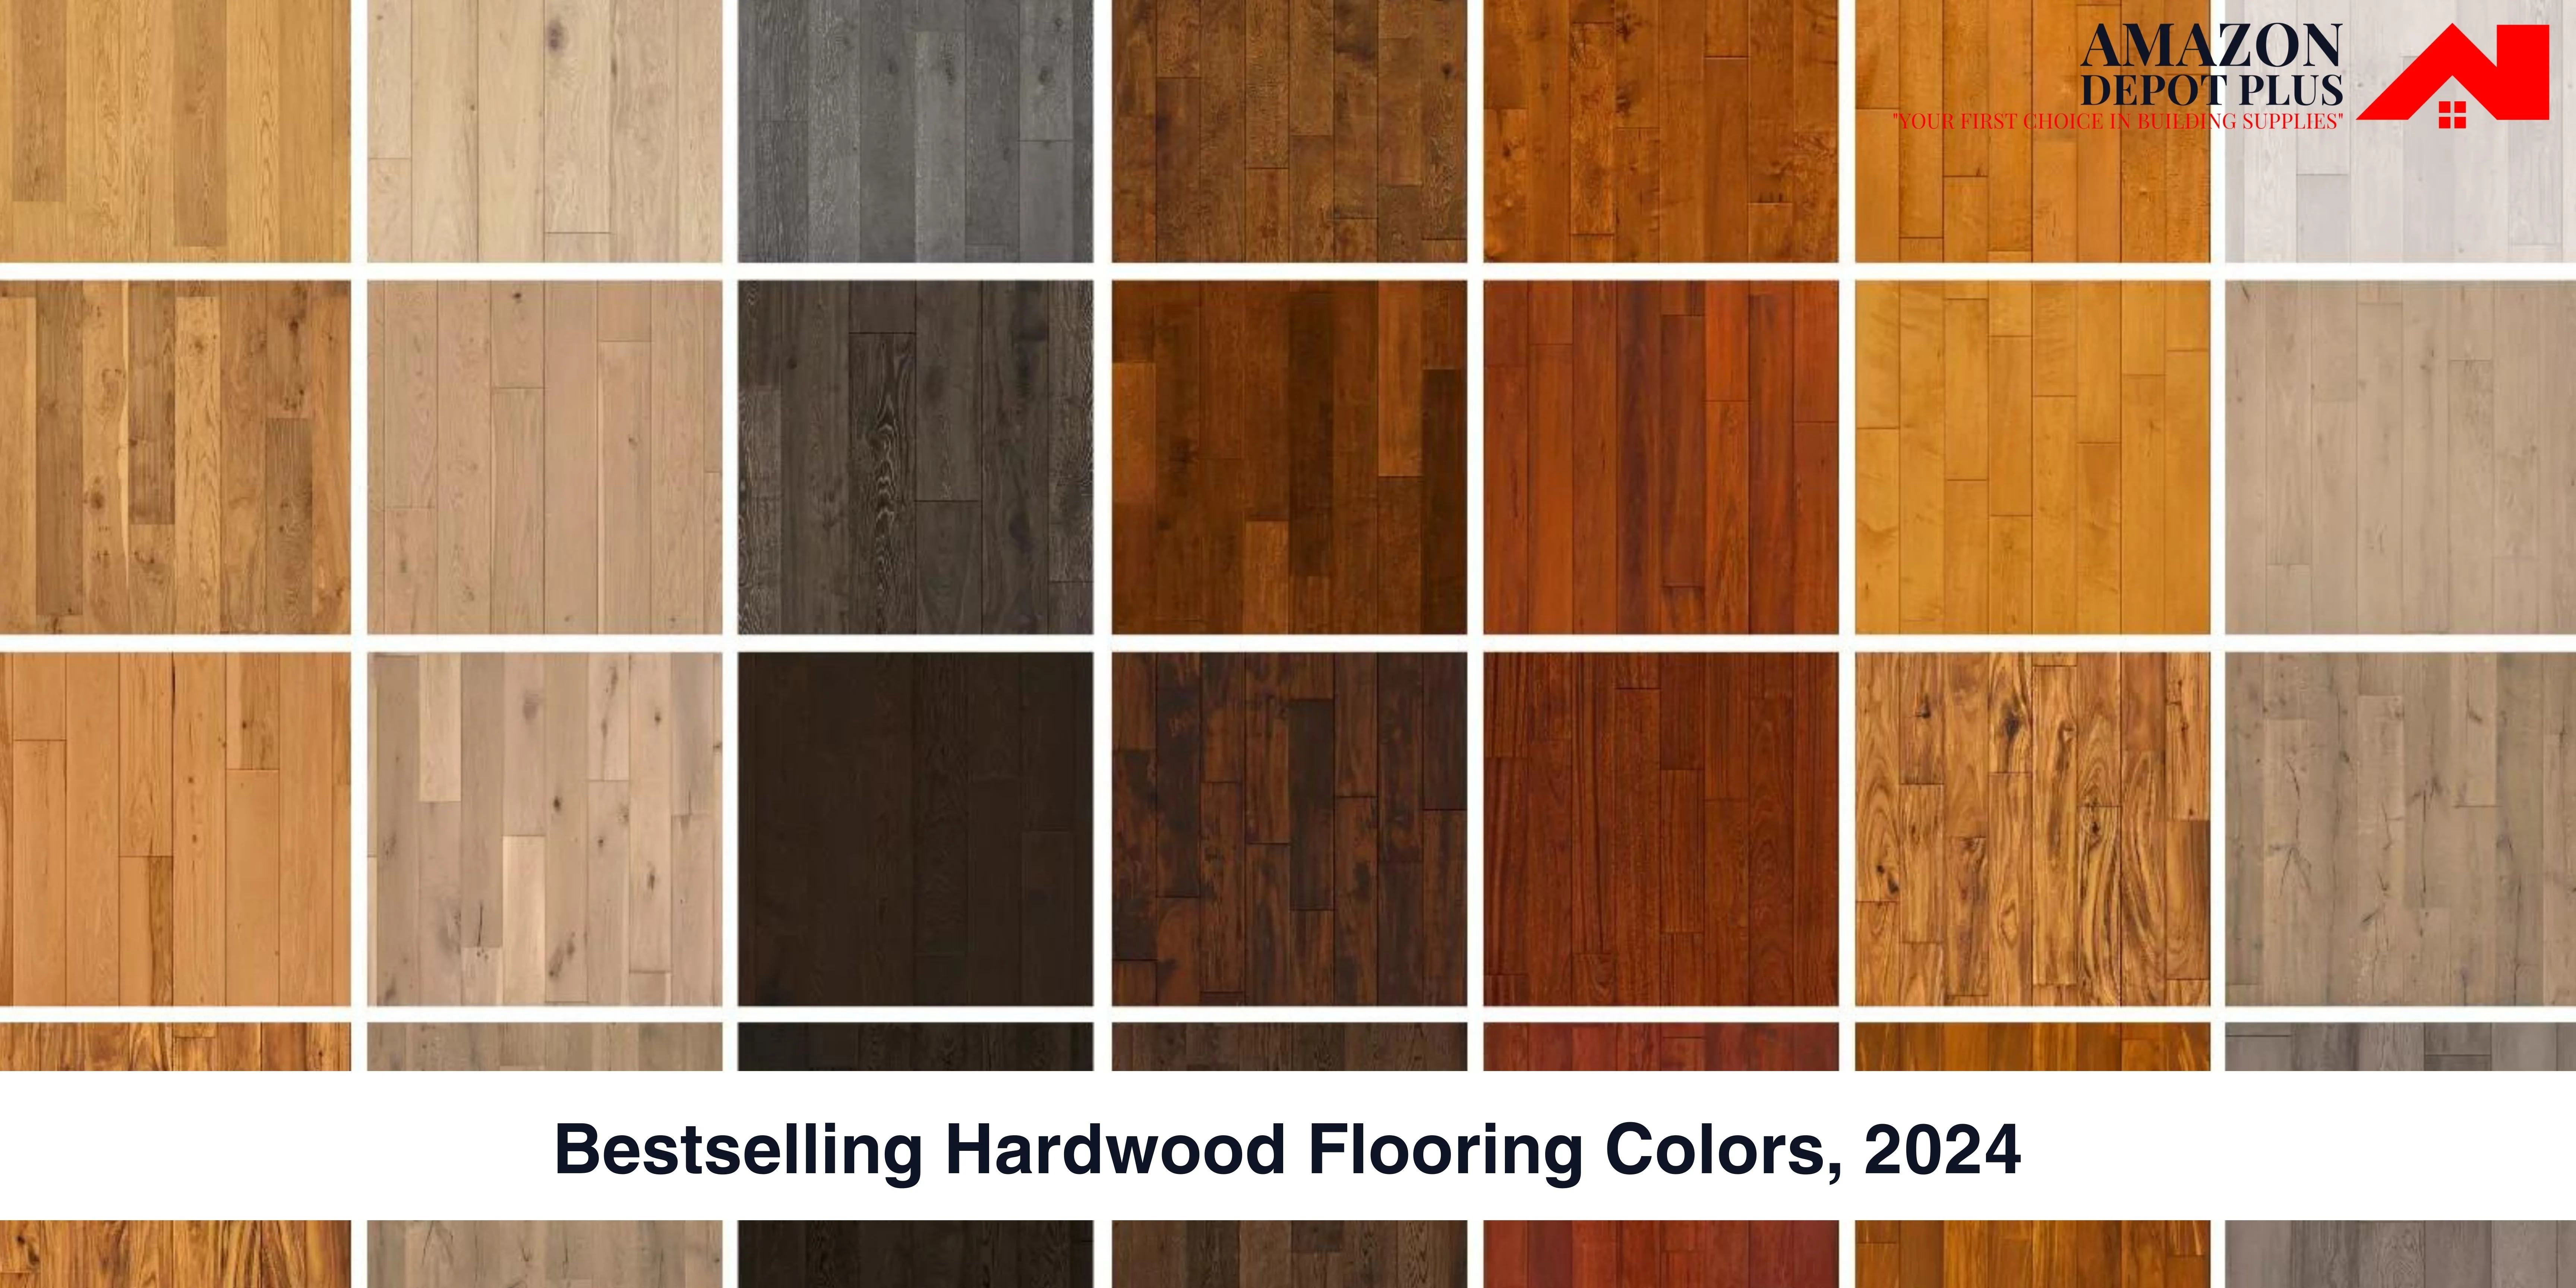 Bestselling Hardwood Flooring Colors 2024